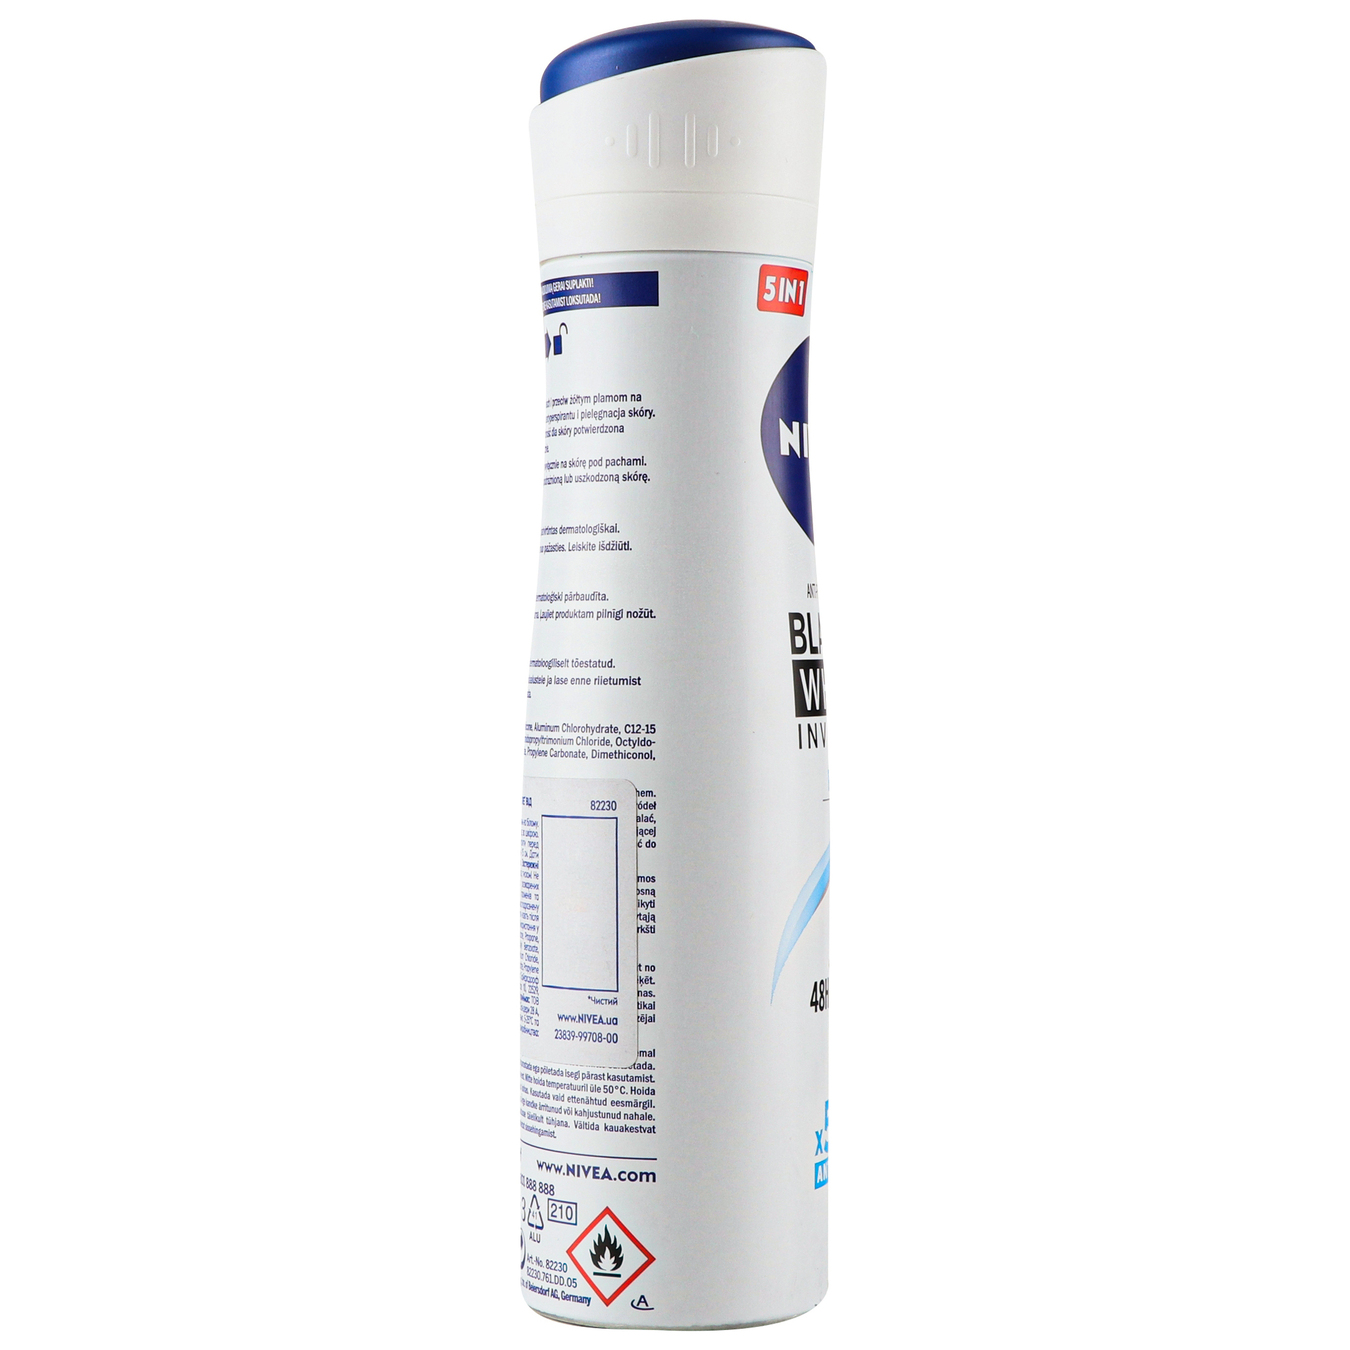 Deodorant Nivea for women Invisible Pure Invisible Protection spray 150ml 2